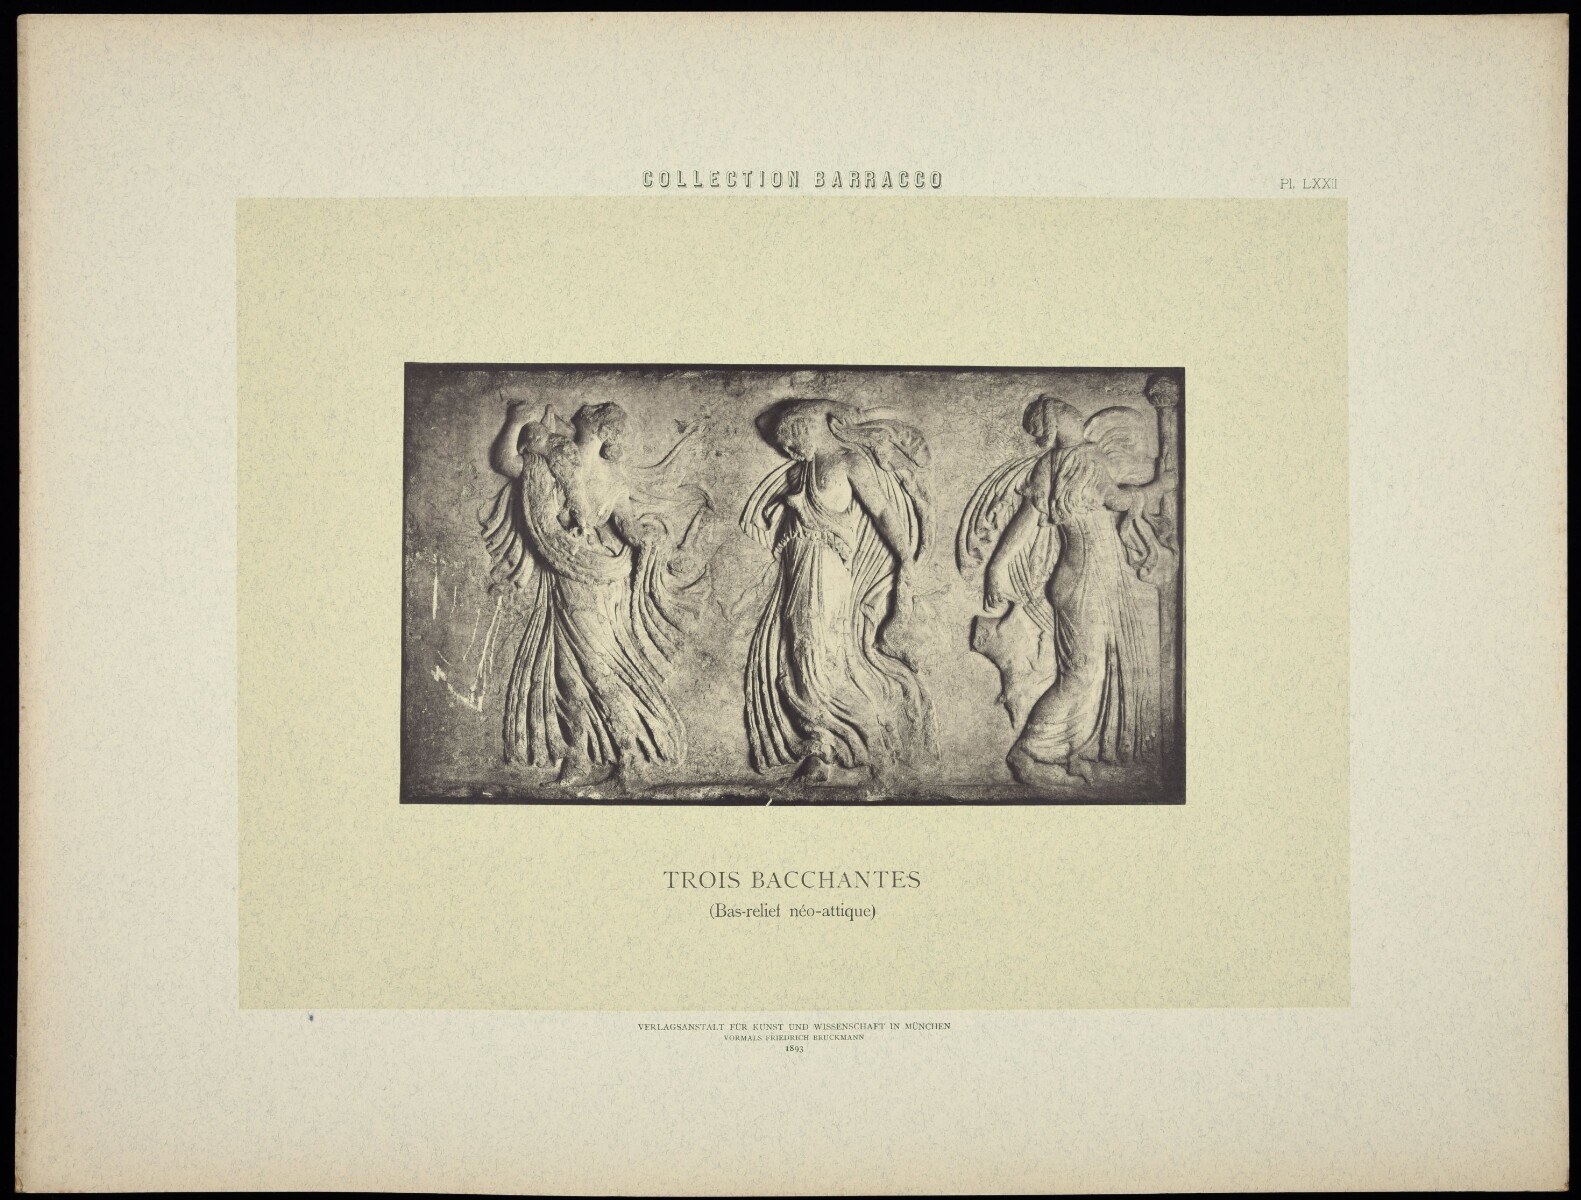 Planche LXXII. Trois Bacchantes (bas-relief néo-attique)